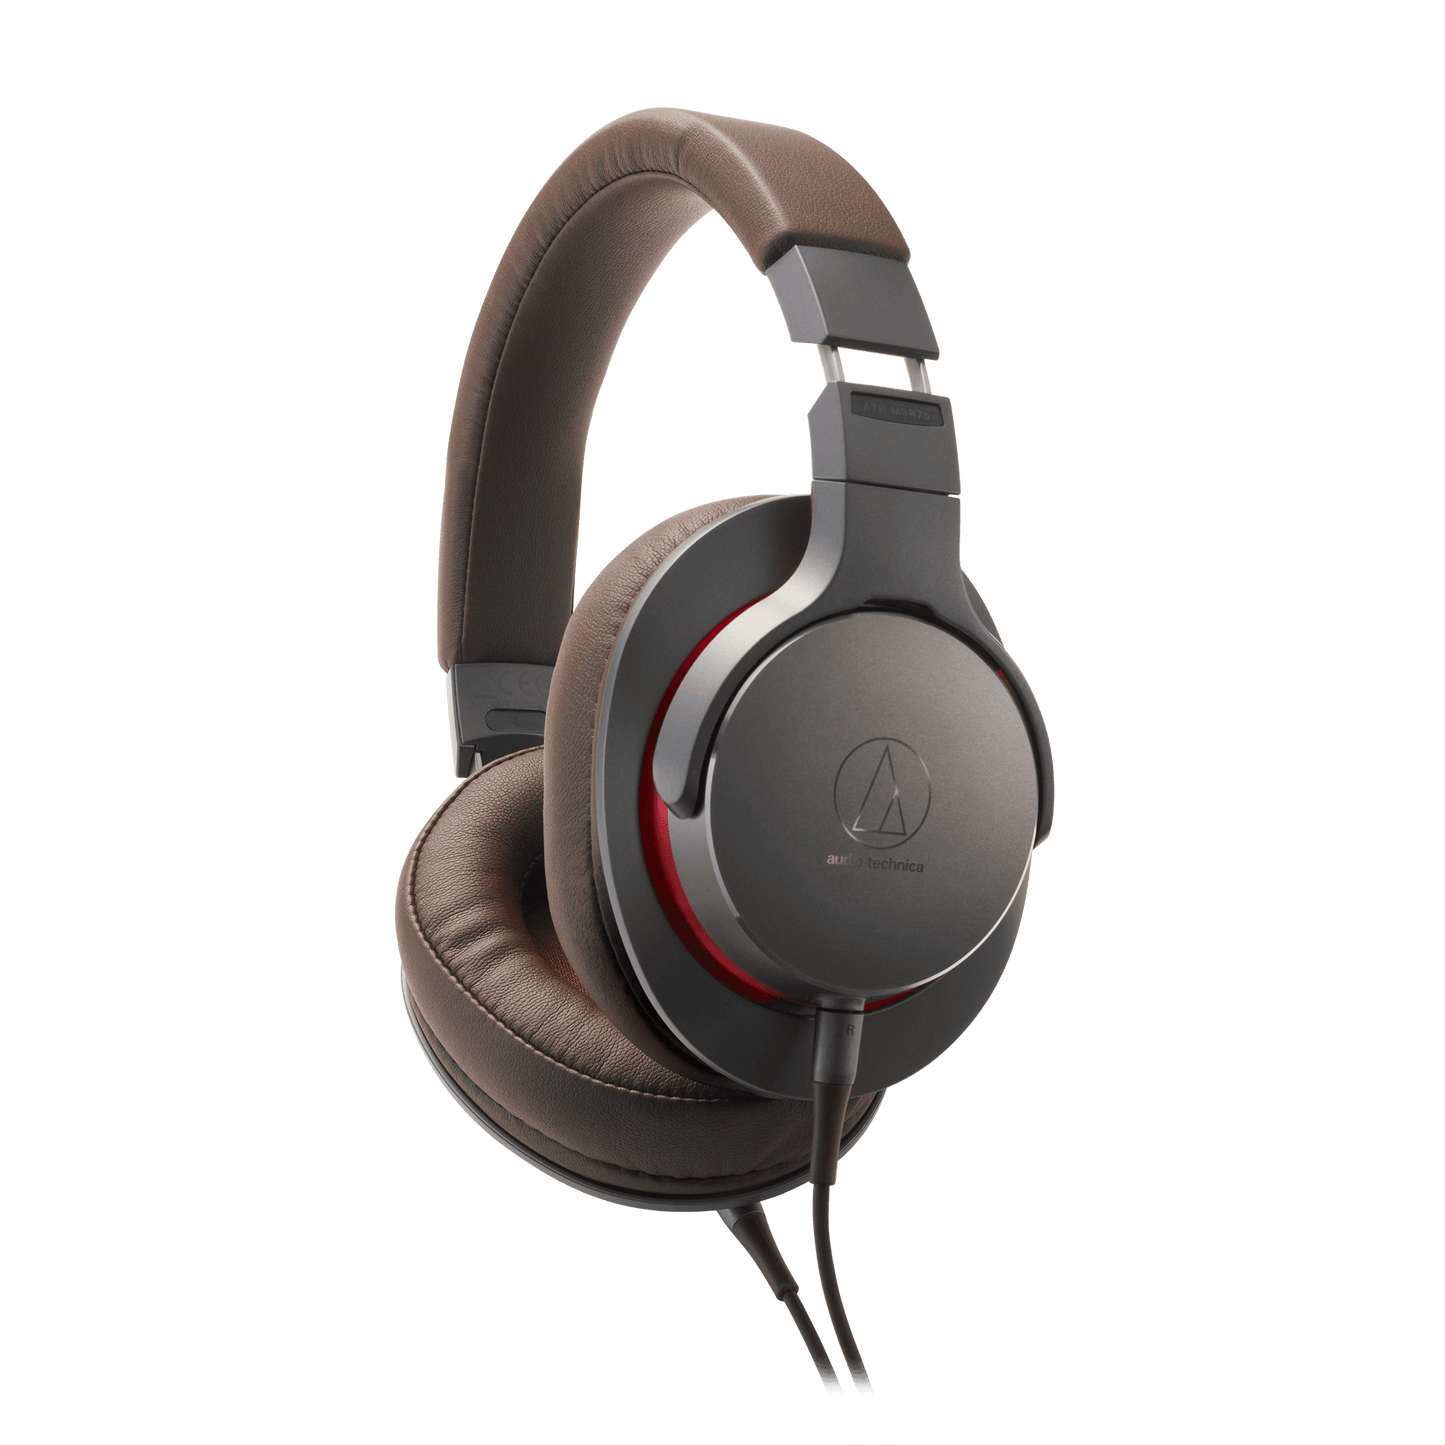 Audio-Technica ATH-MSR7b Hi-Res Over-Ear Headphones